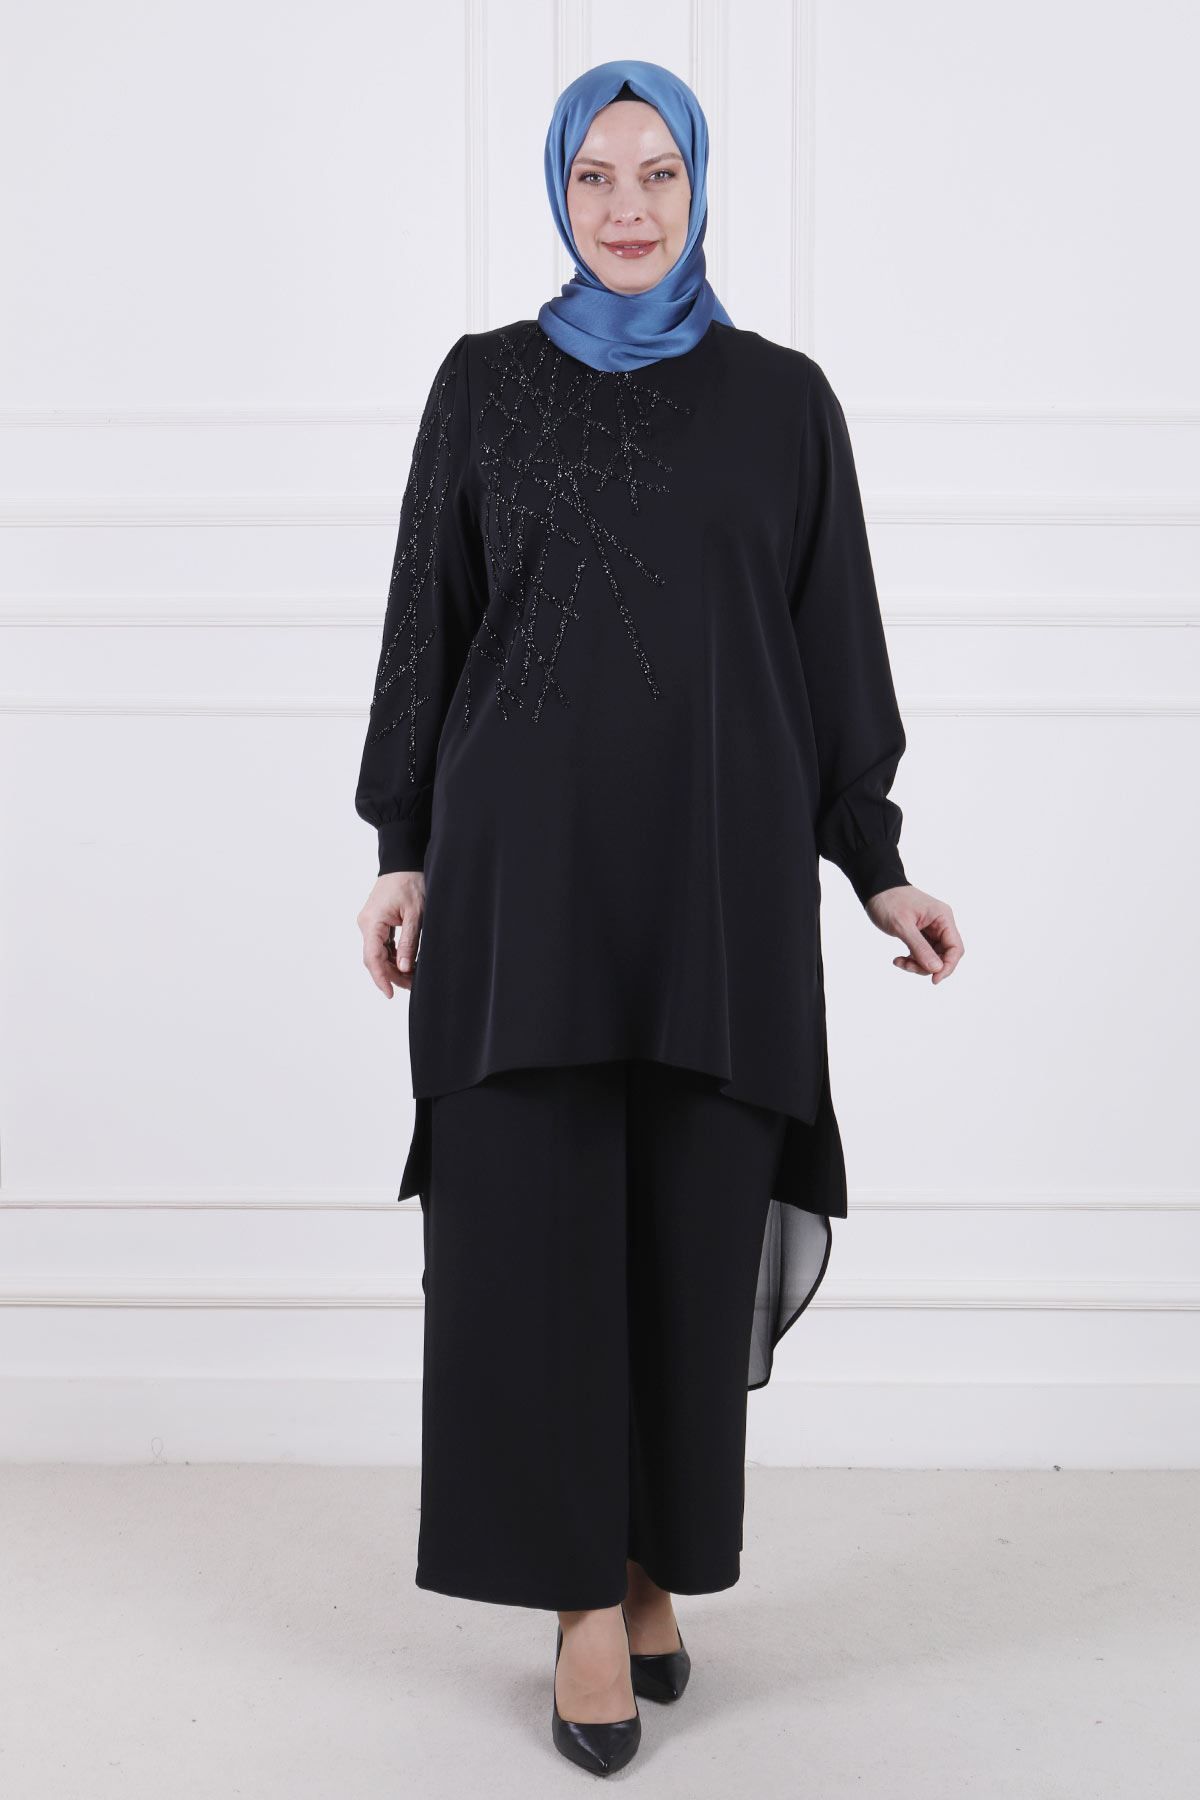 ottoman wear OTW60018 Büyük Beden Taş Detaylı Krep Takım Siyah